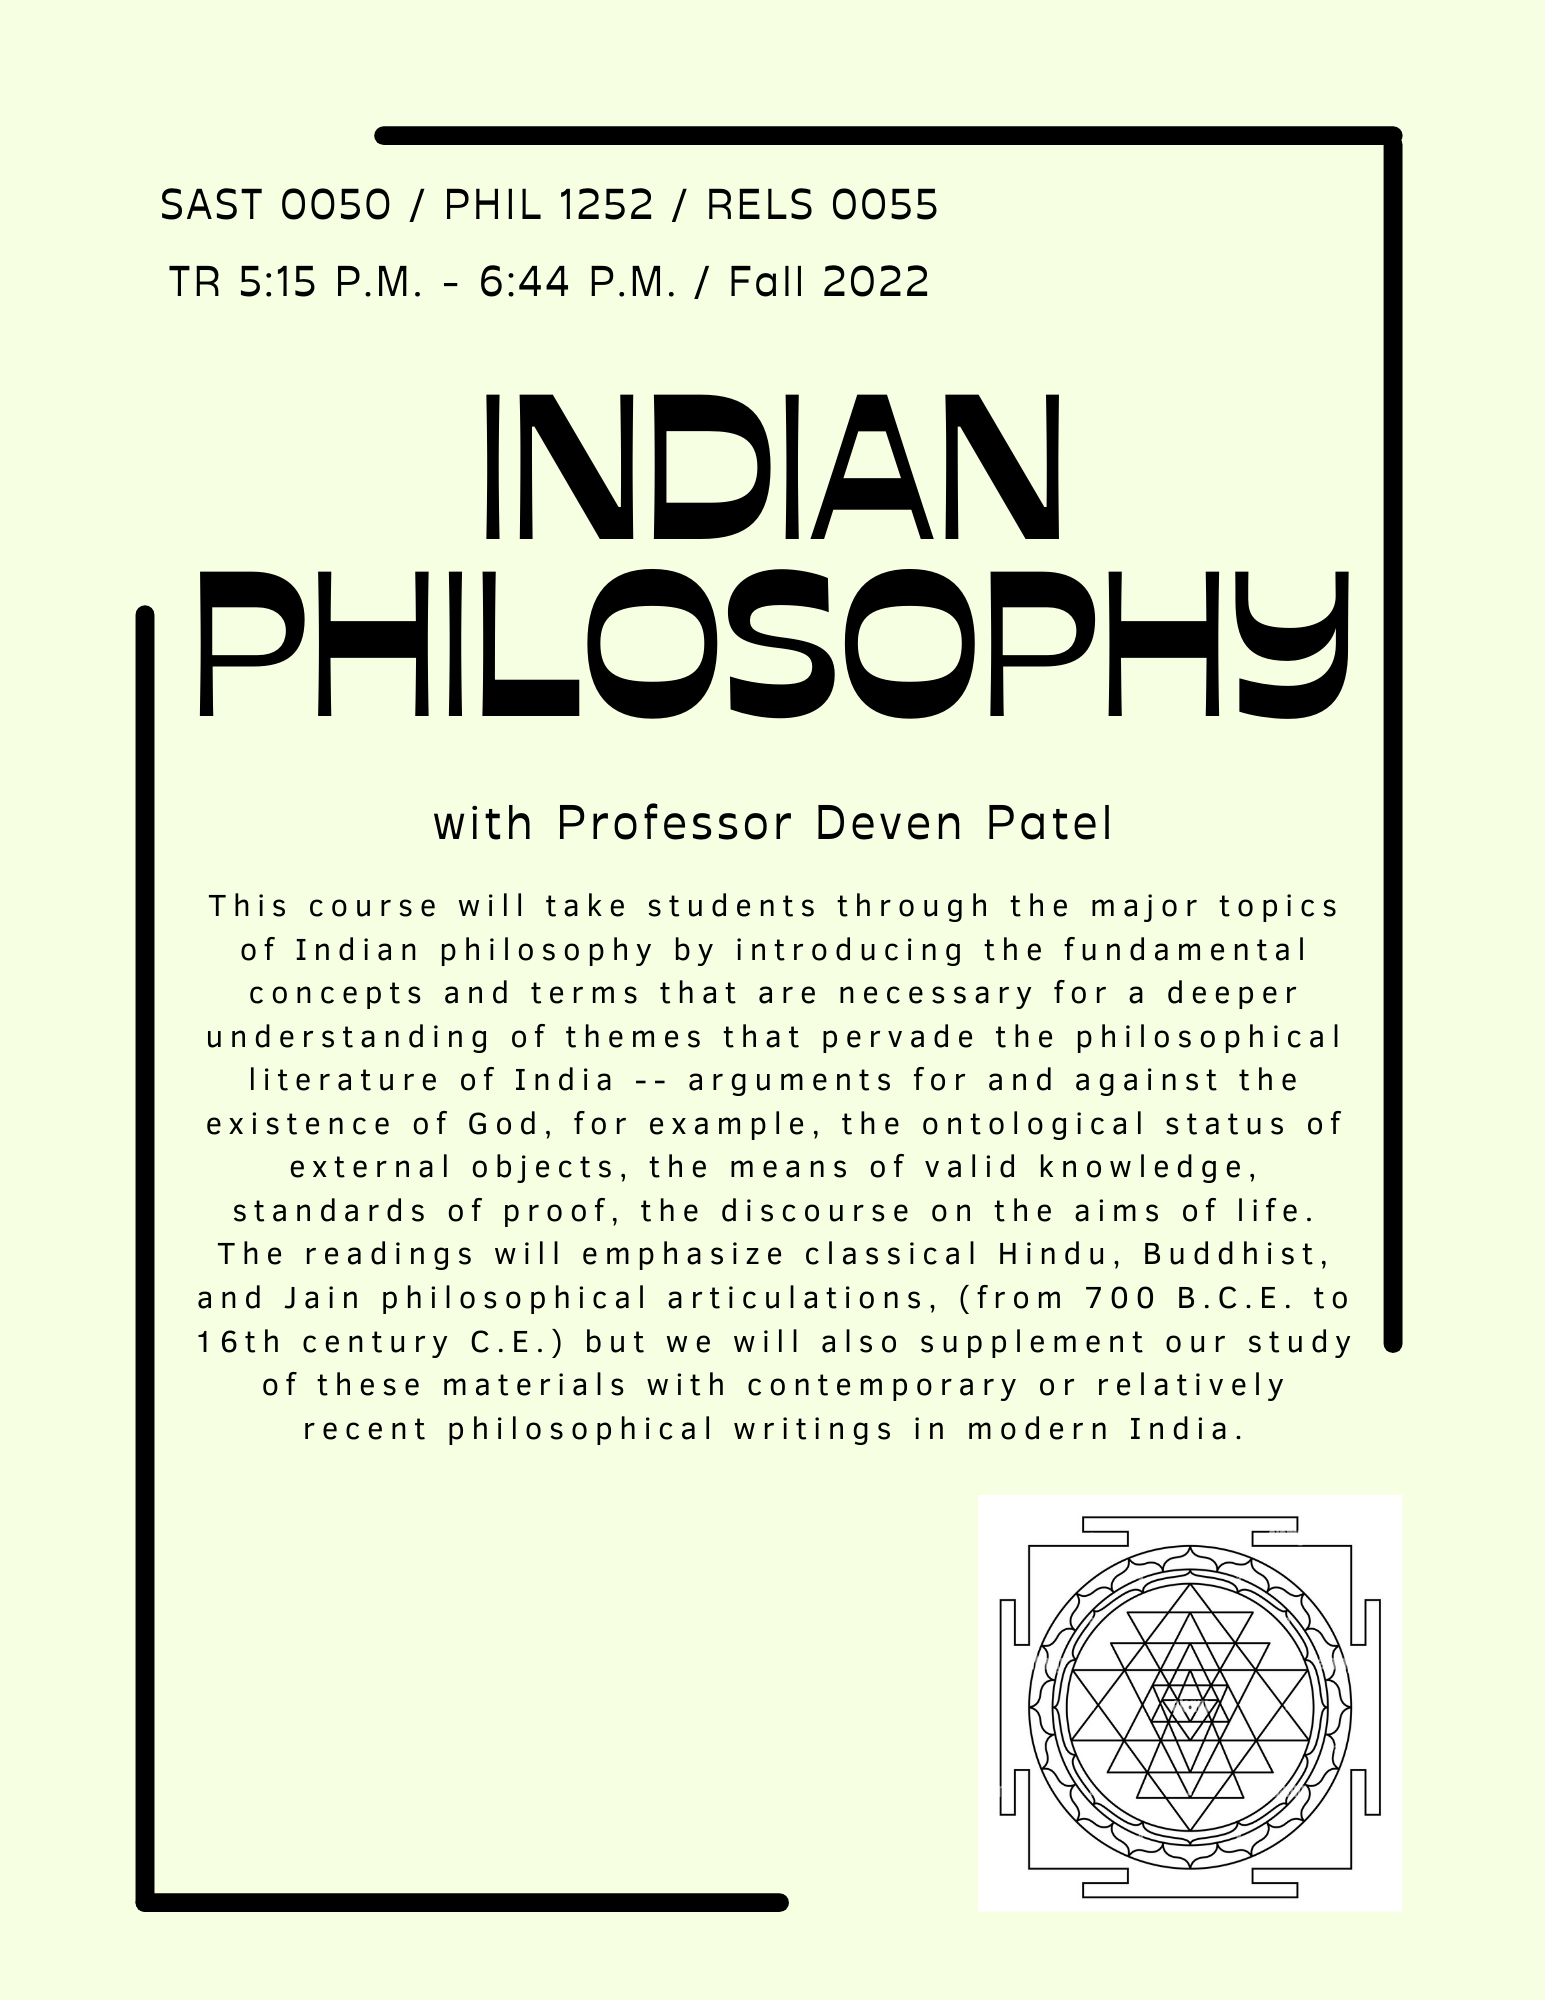 Indian Philosophy Course description